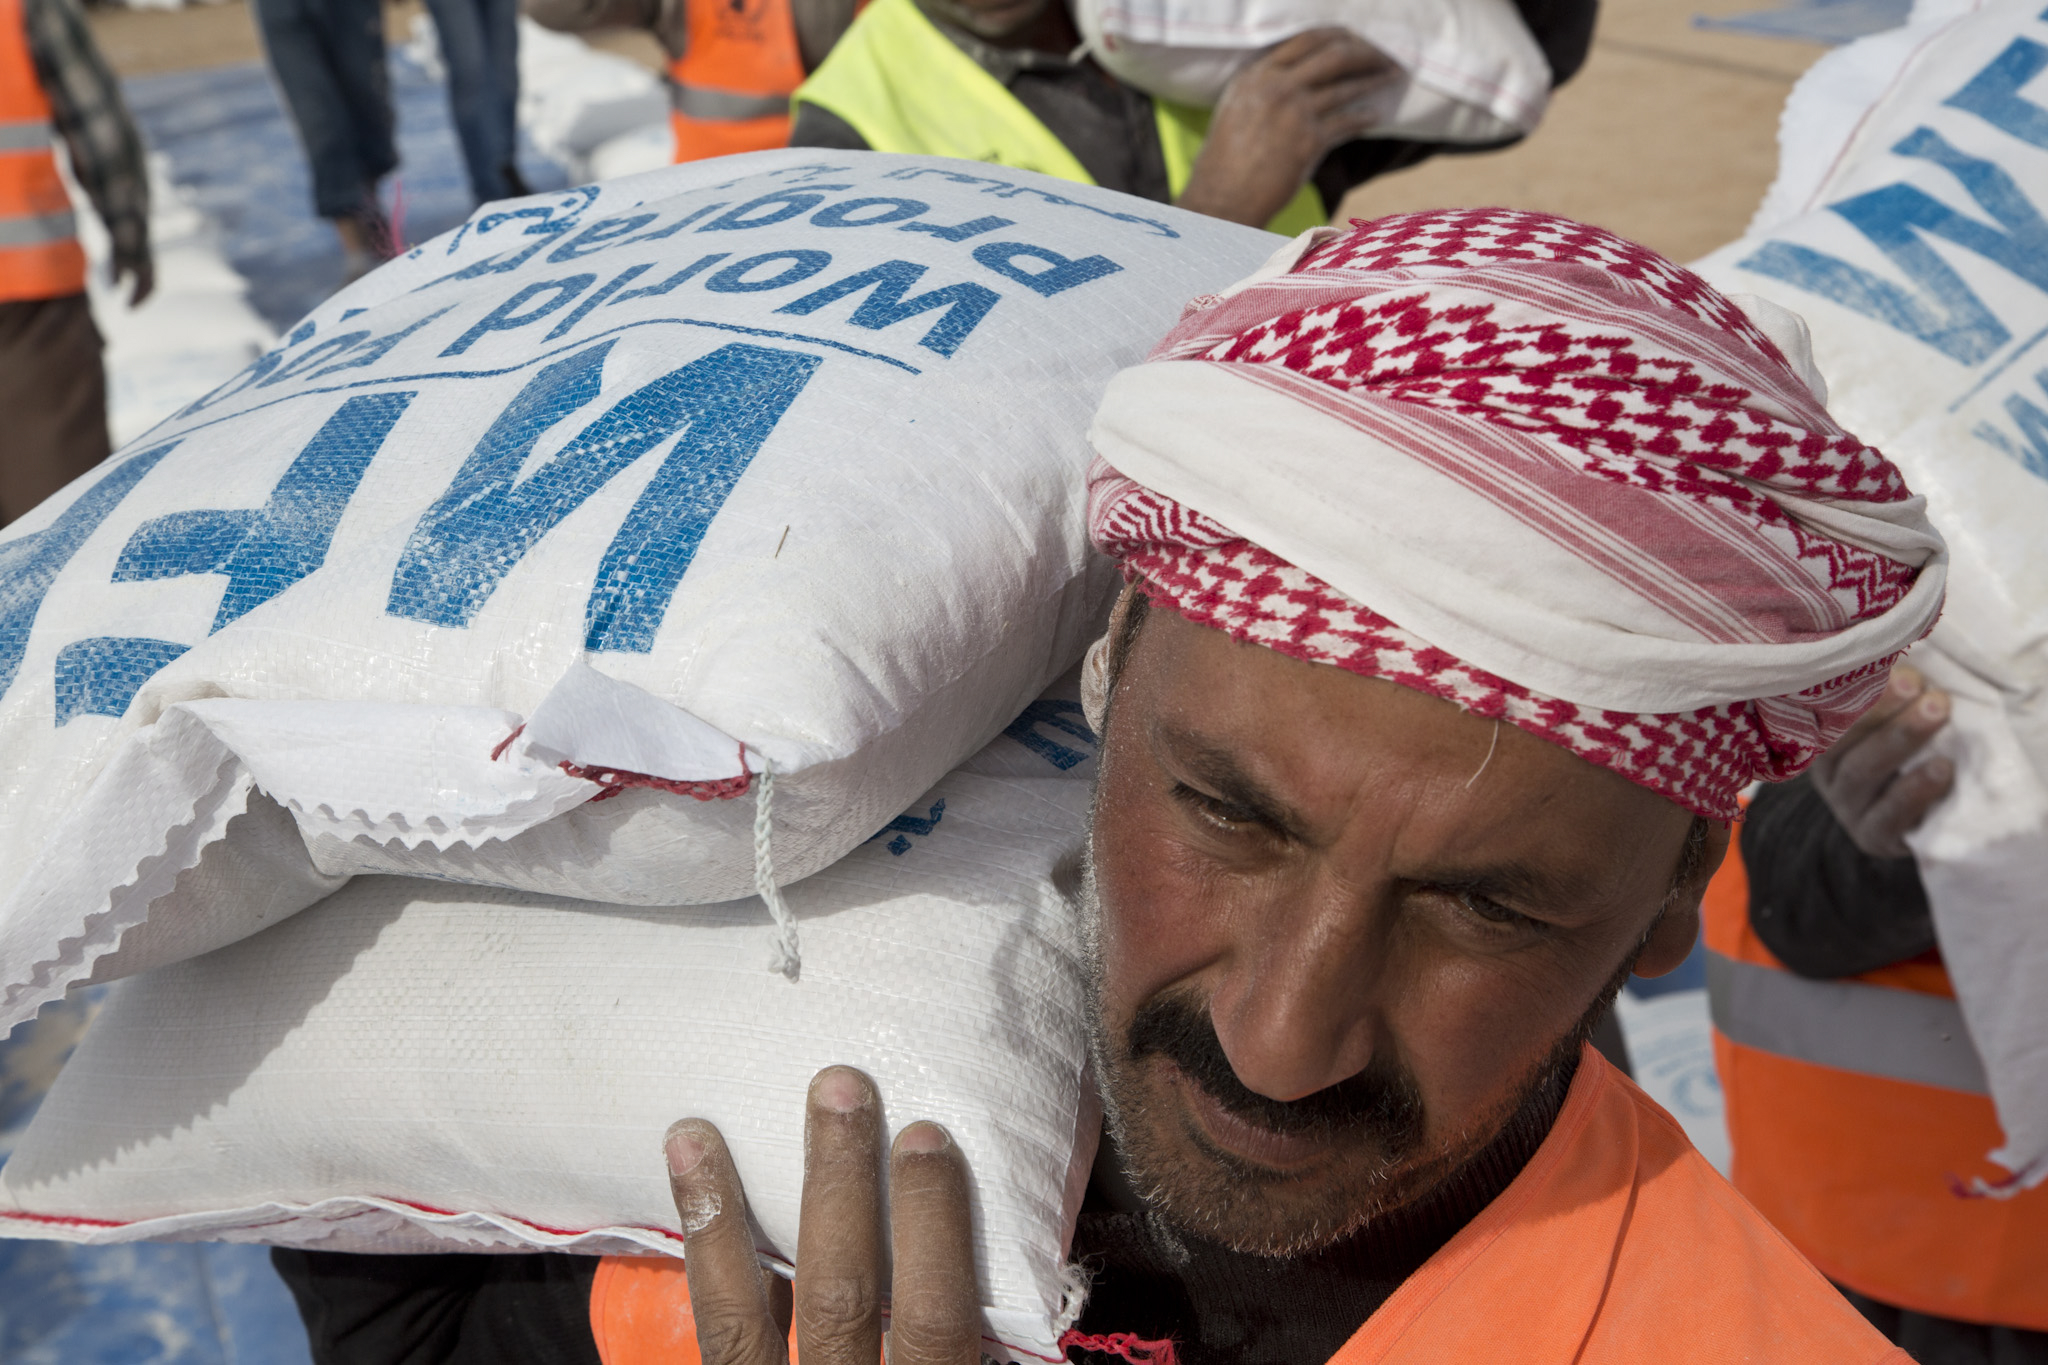 WFP presta asistencia alimentaria a más de 100.000 iraquíes al intensificarse el conflicto en Mosul